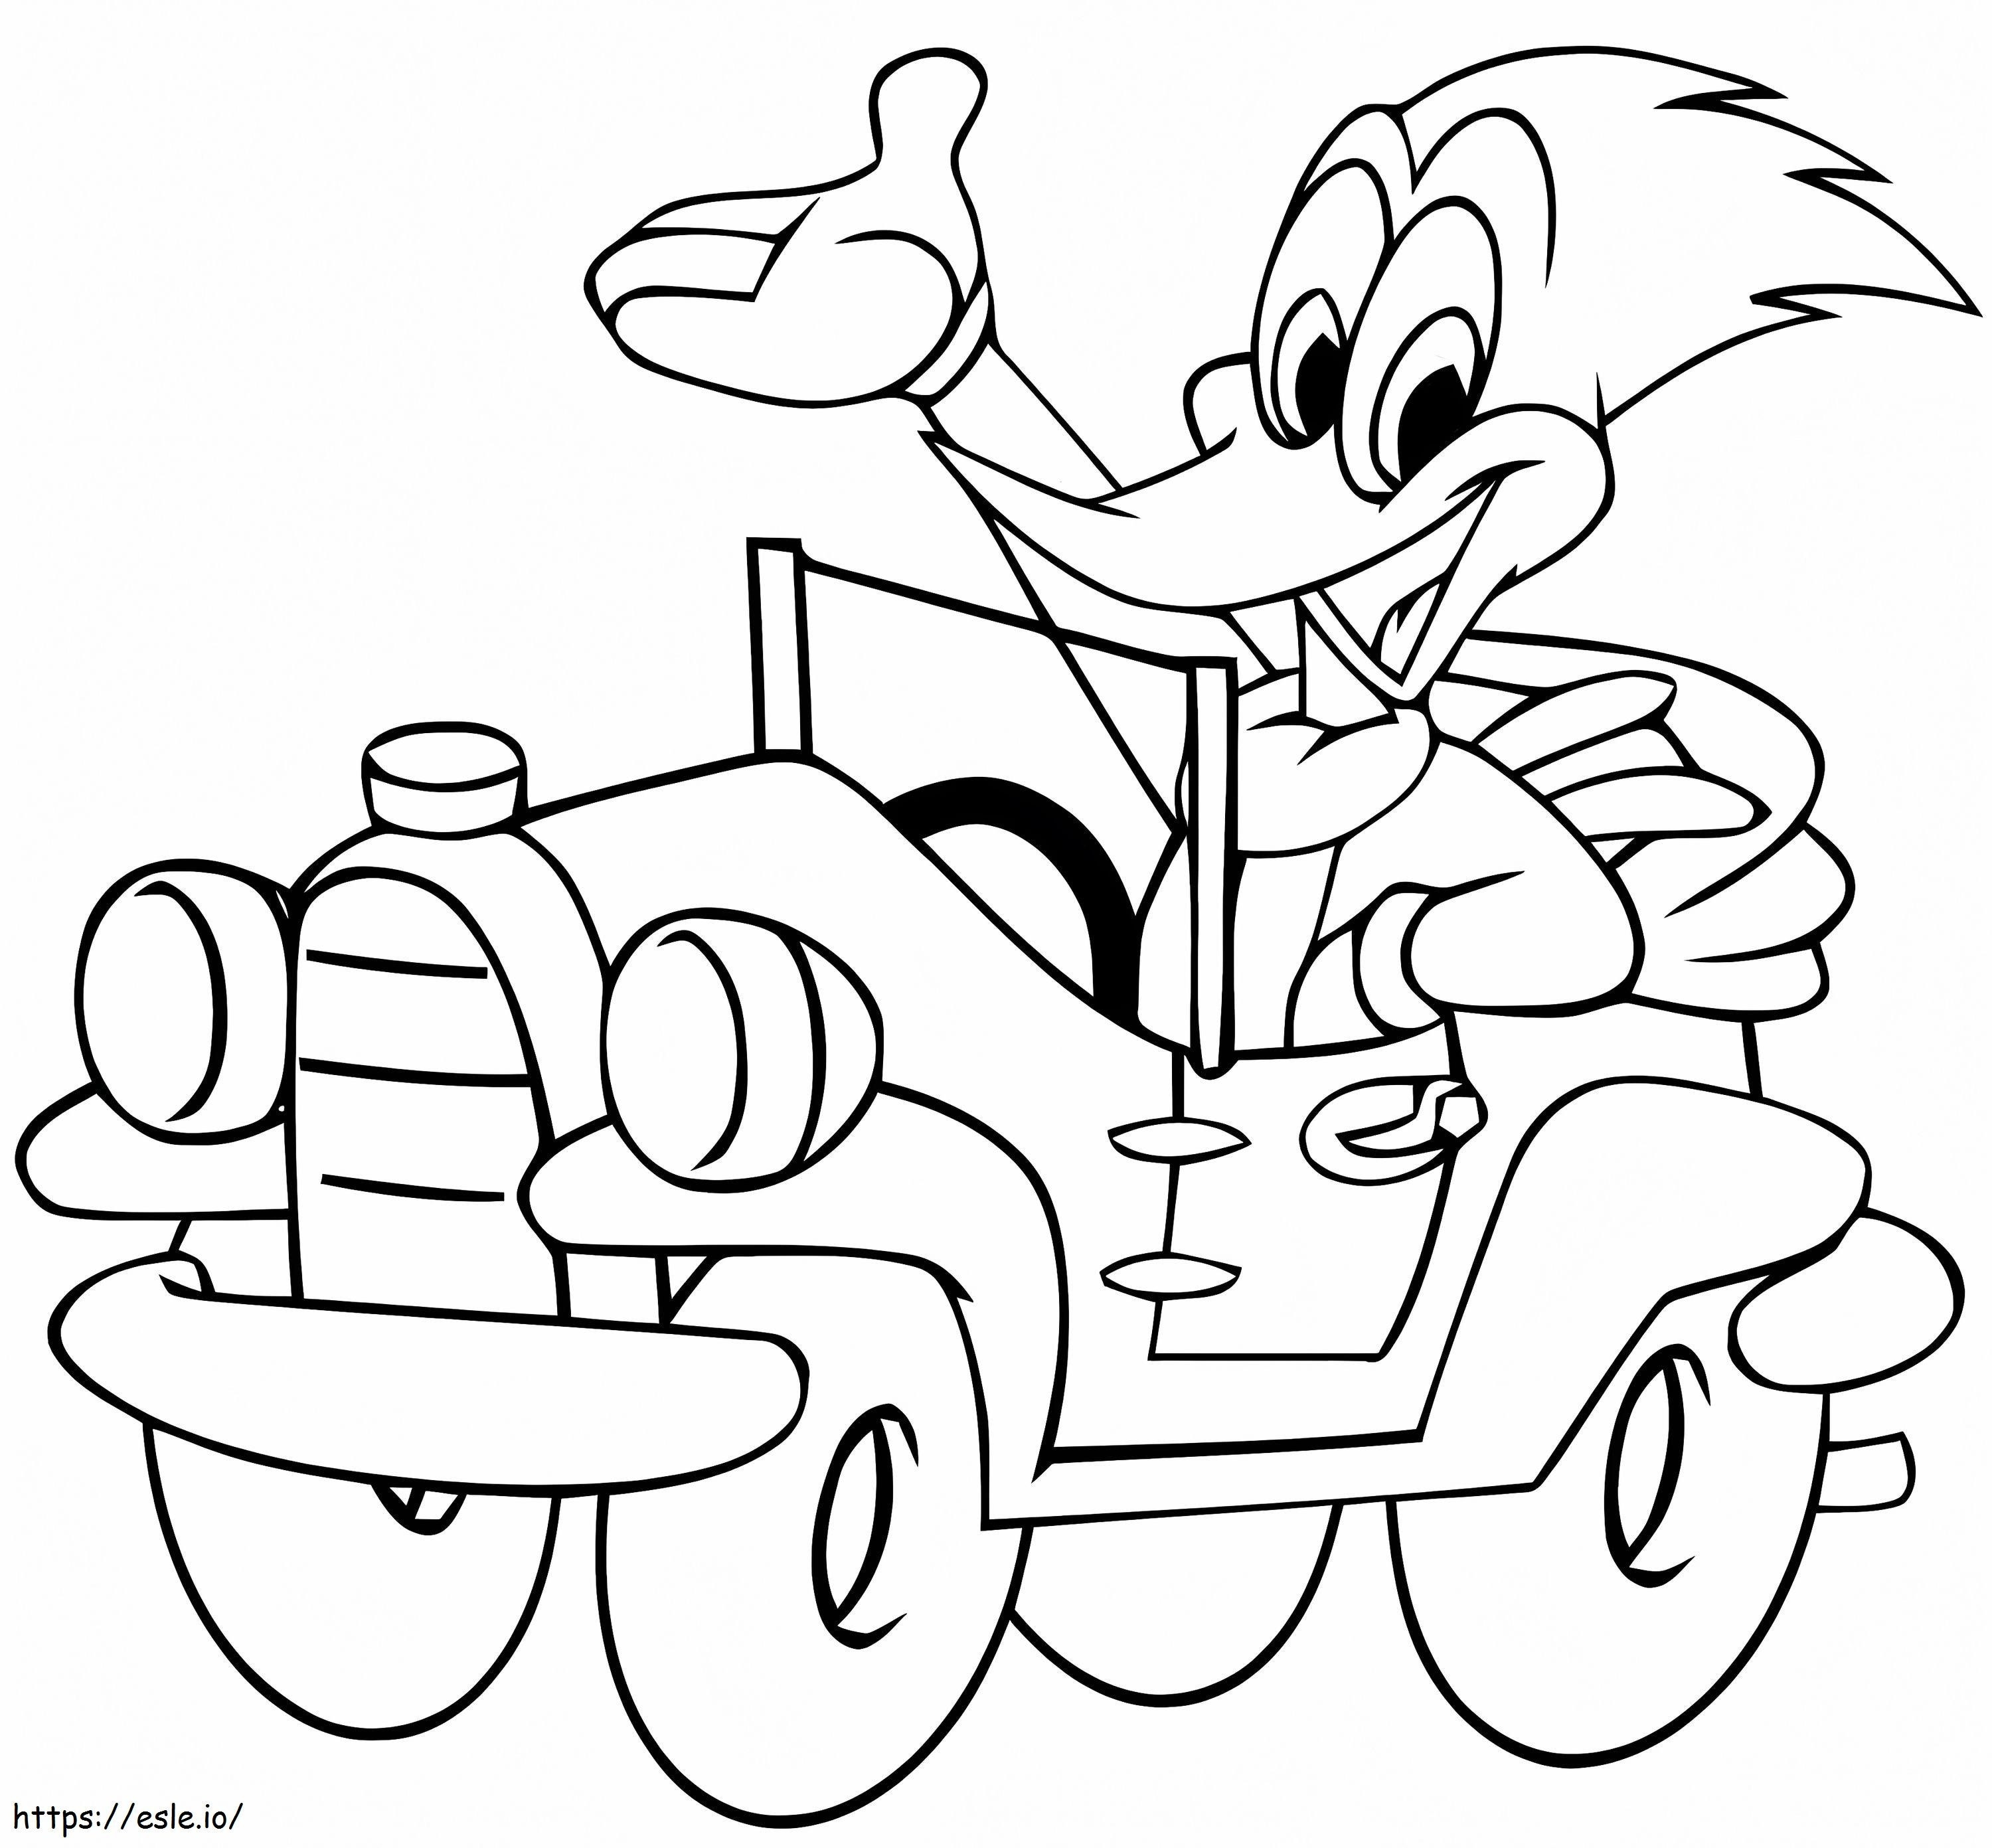 Coloriage Woody Woodpecker en voiture à imprimer dessin